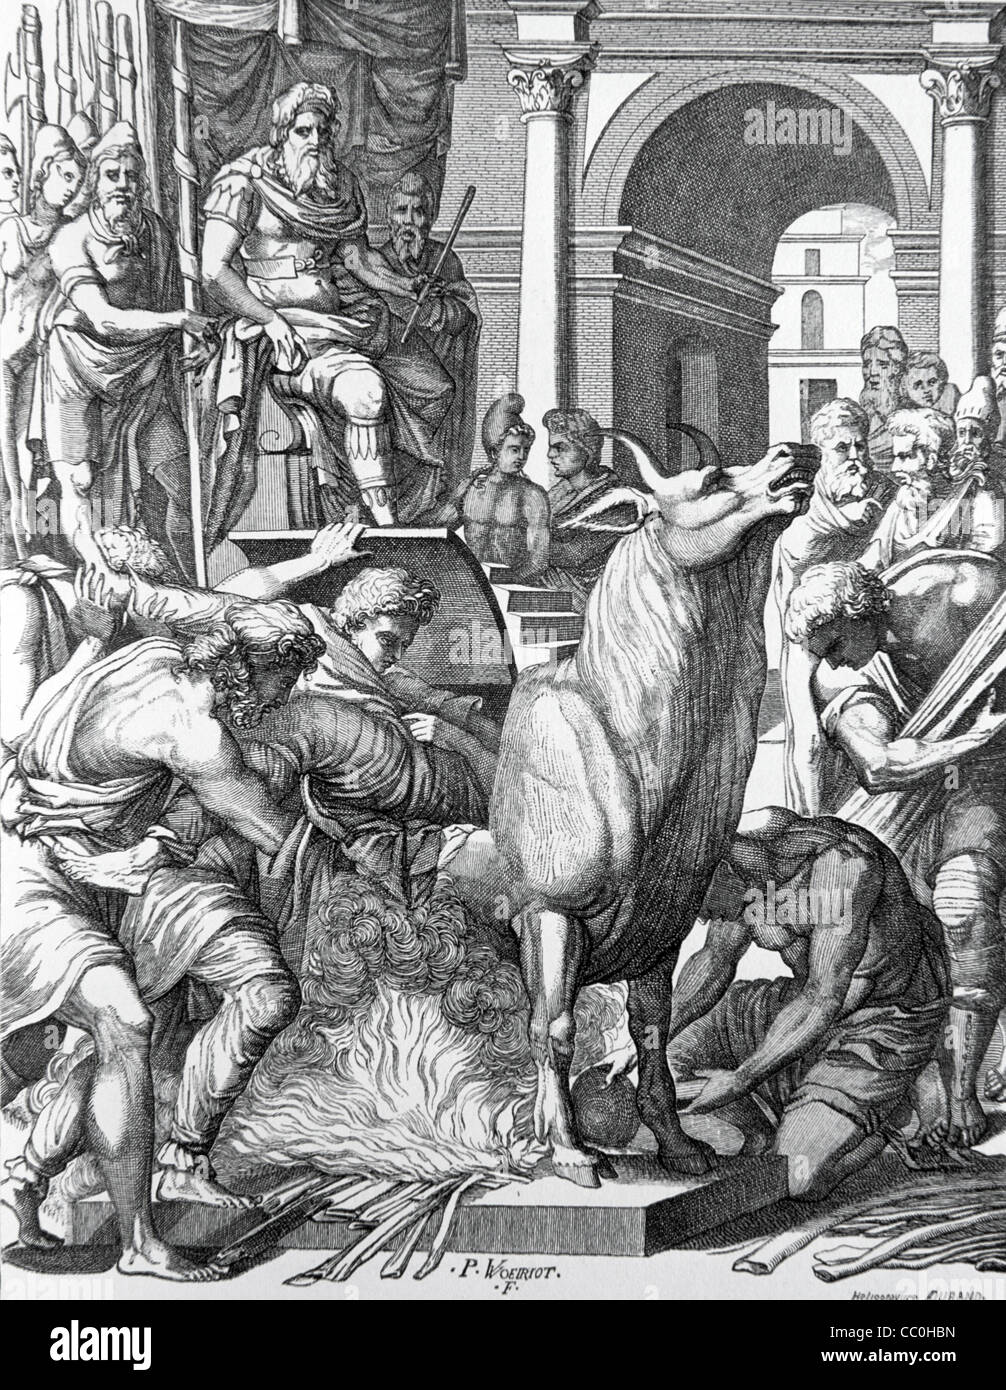 Phalaris, tiranno di Agragas o Agrigentum, colonia in Sicilia (570-554BC) che condanna lo scultore Perillos al Brazen Bronze Bull Illustrazione o incisione vintage Foto Stock